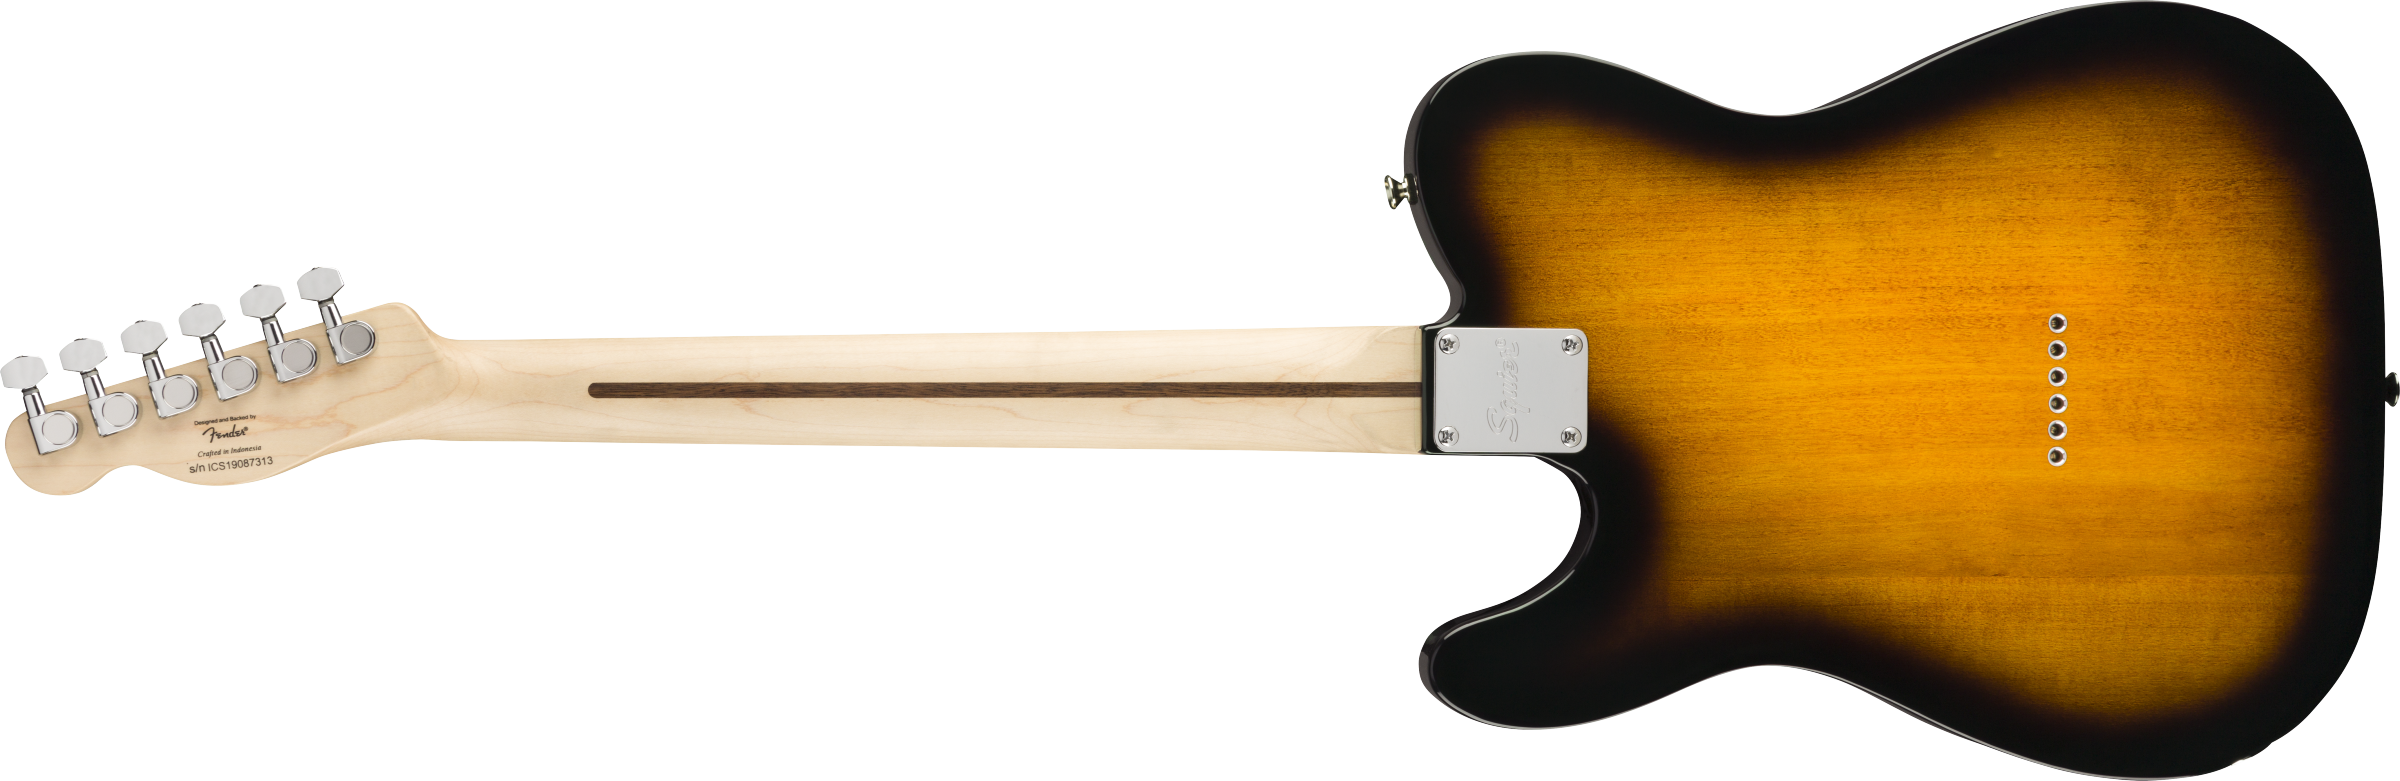 Fender Squier Bullet Telecaster, Brown Sunburst